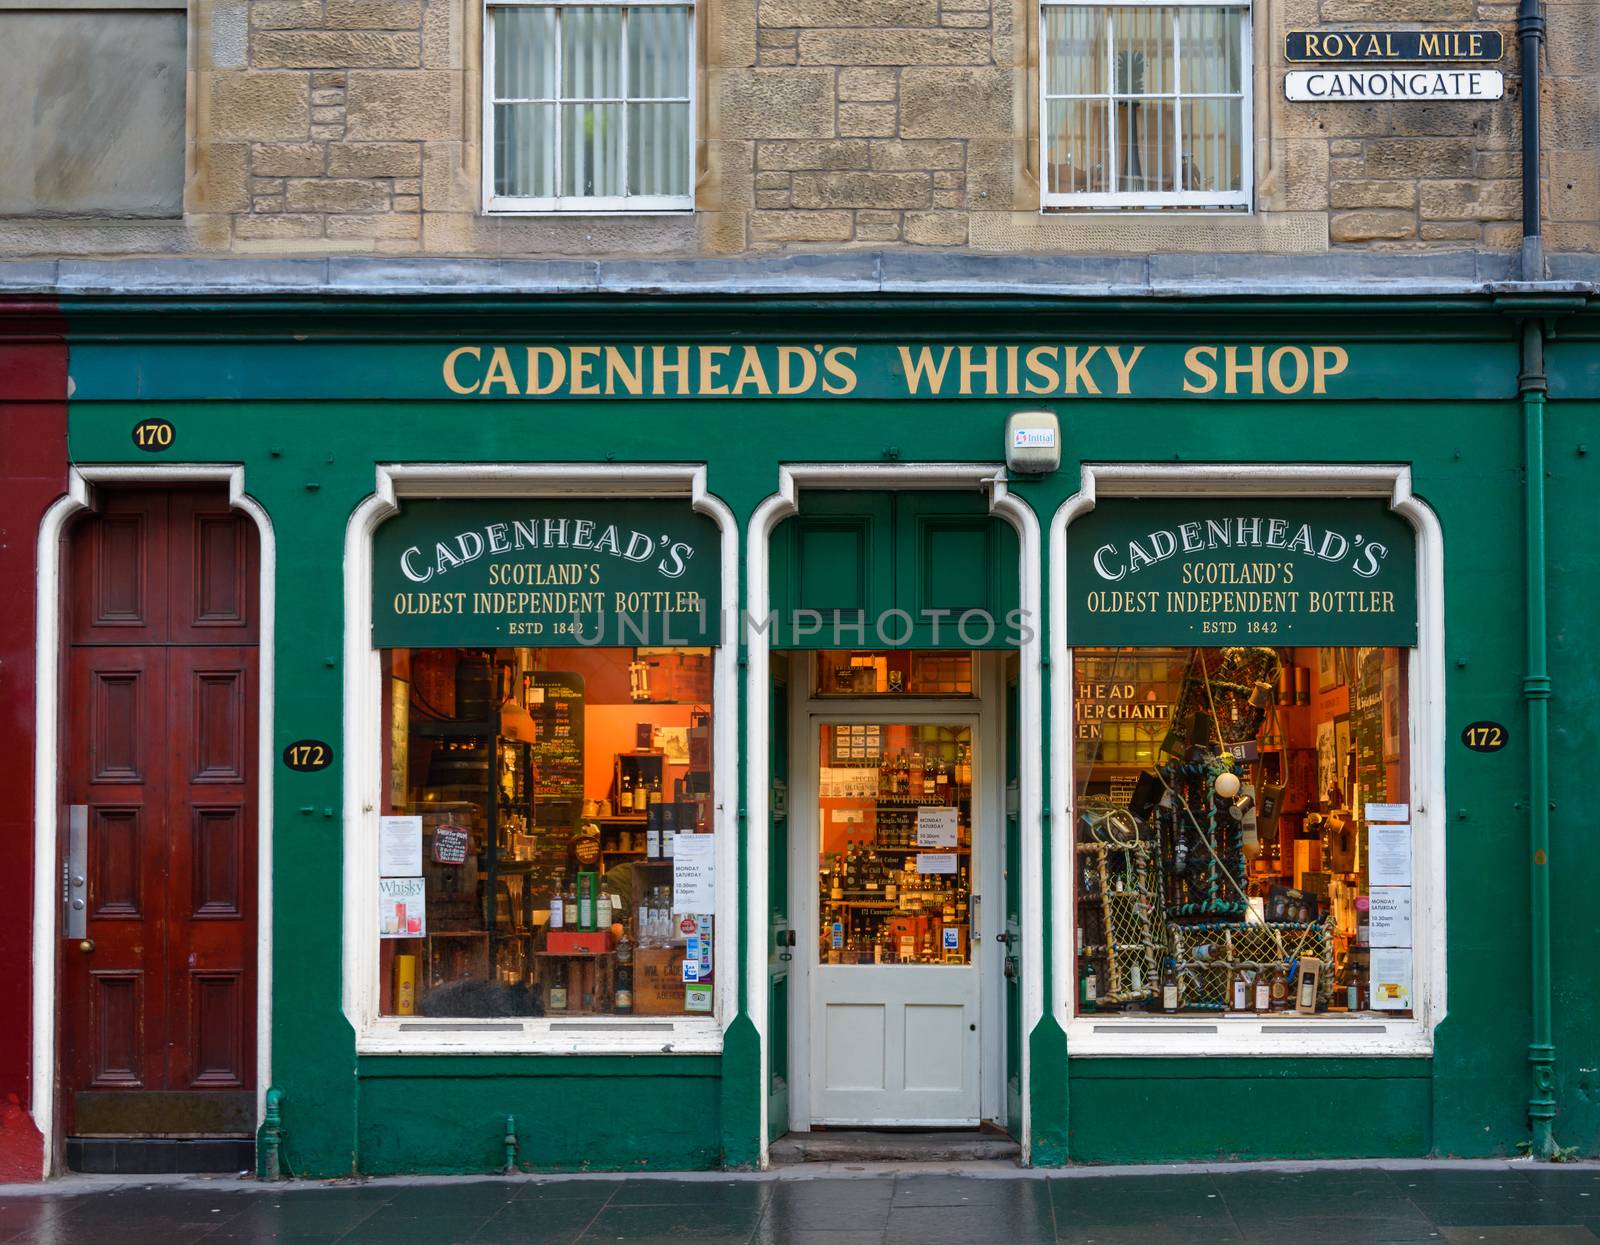 EDINBURGH, SCOTLAND - CIRCA NOVEMBER 2012: Cadenhead's whisky shop facade on Cannongate, Royal Mile